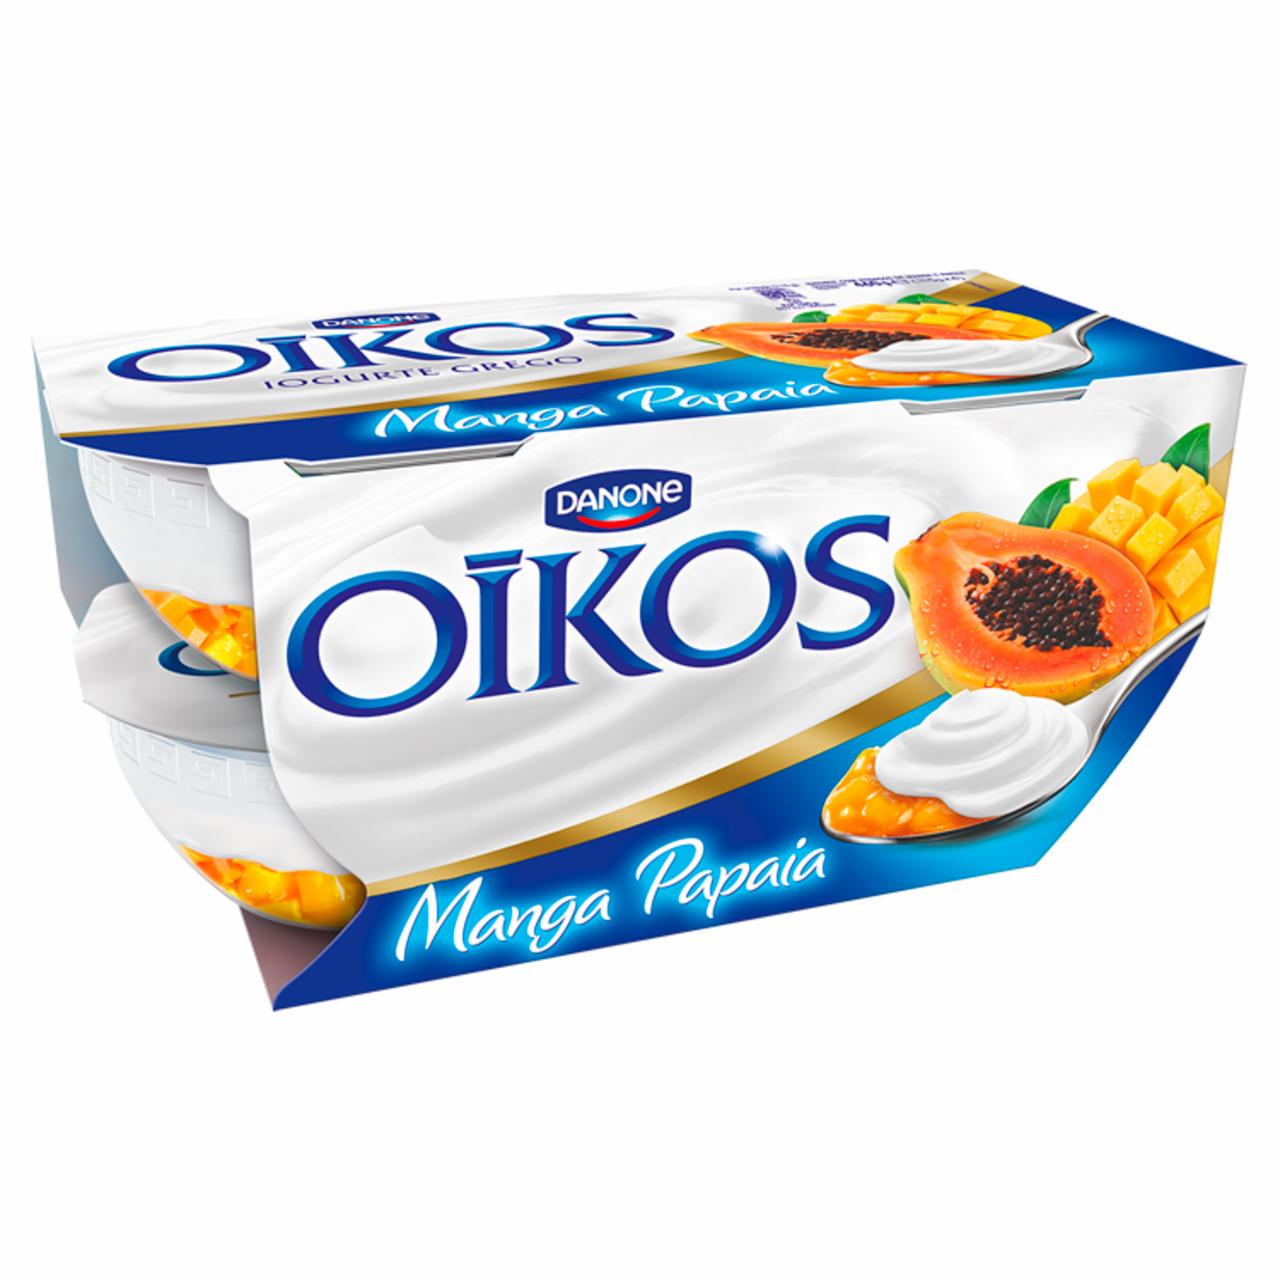 Képek - Danone Oikos Extreme élőflórás görög krémjoghurt mangó-papaya öntettel 4 x 115 g